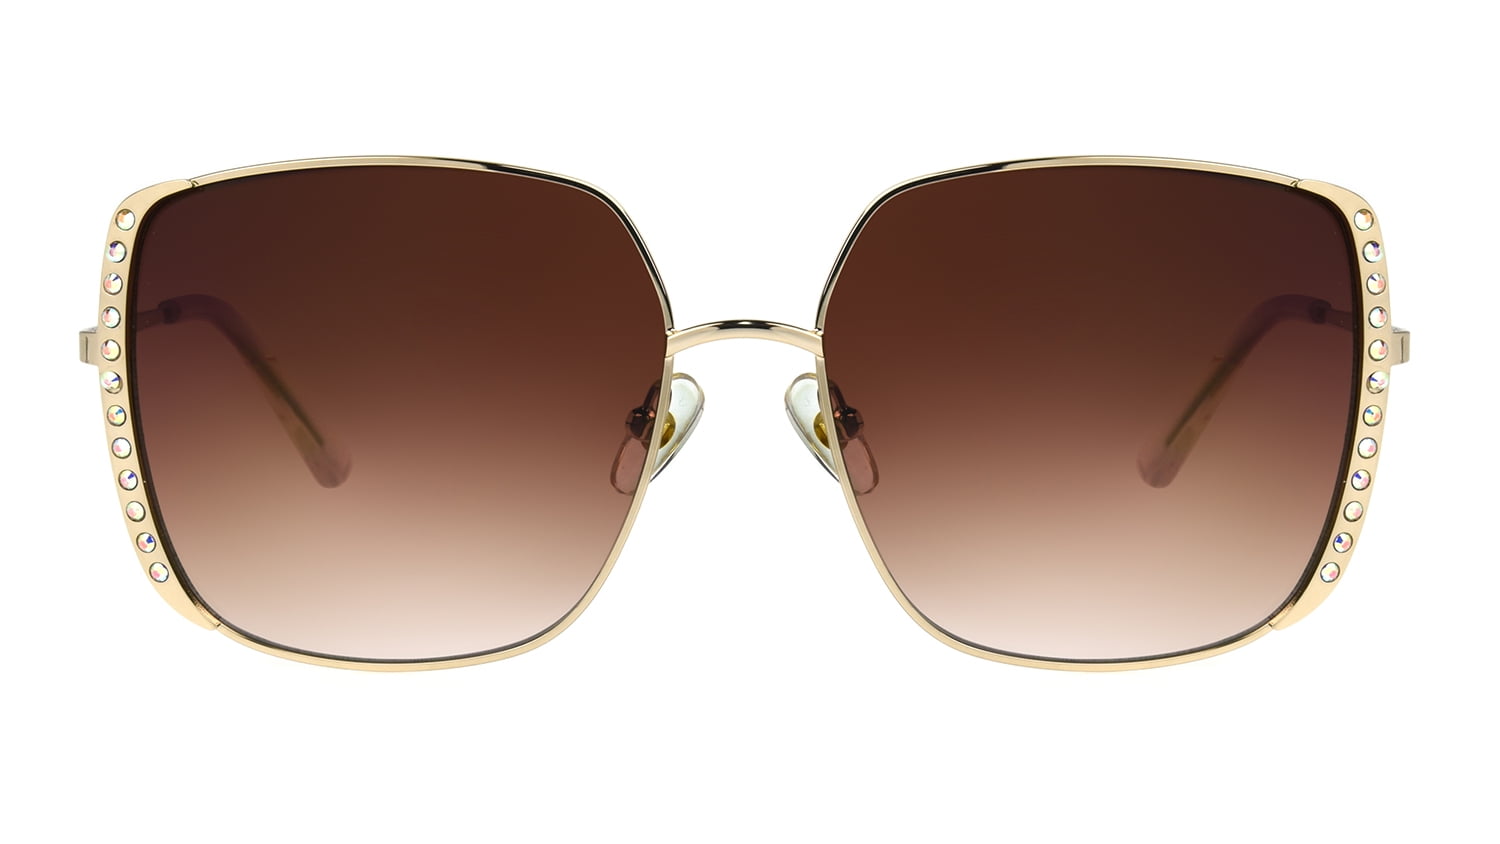 Foster Grant Women's Square Gold Sunglasses